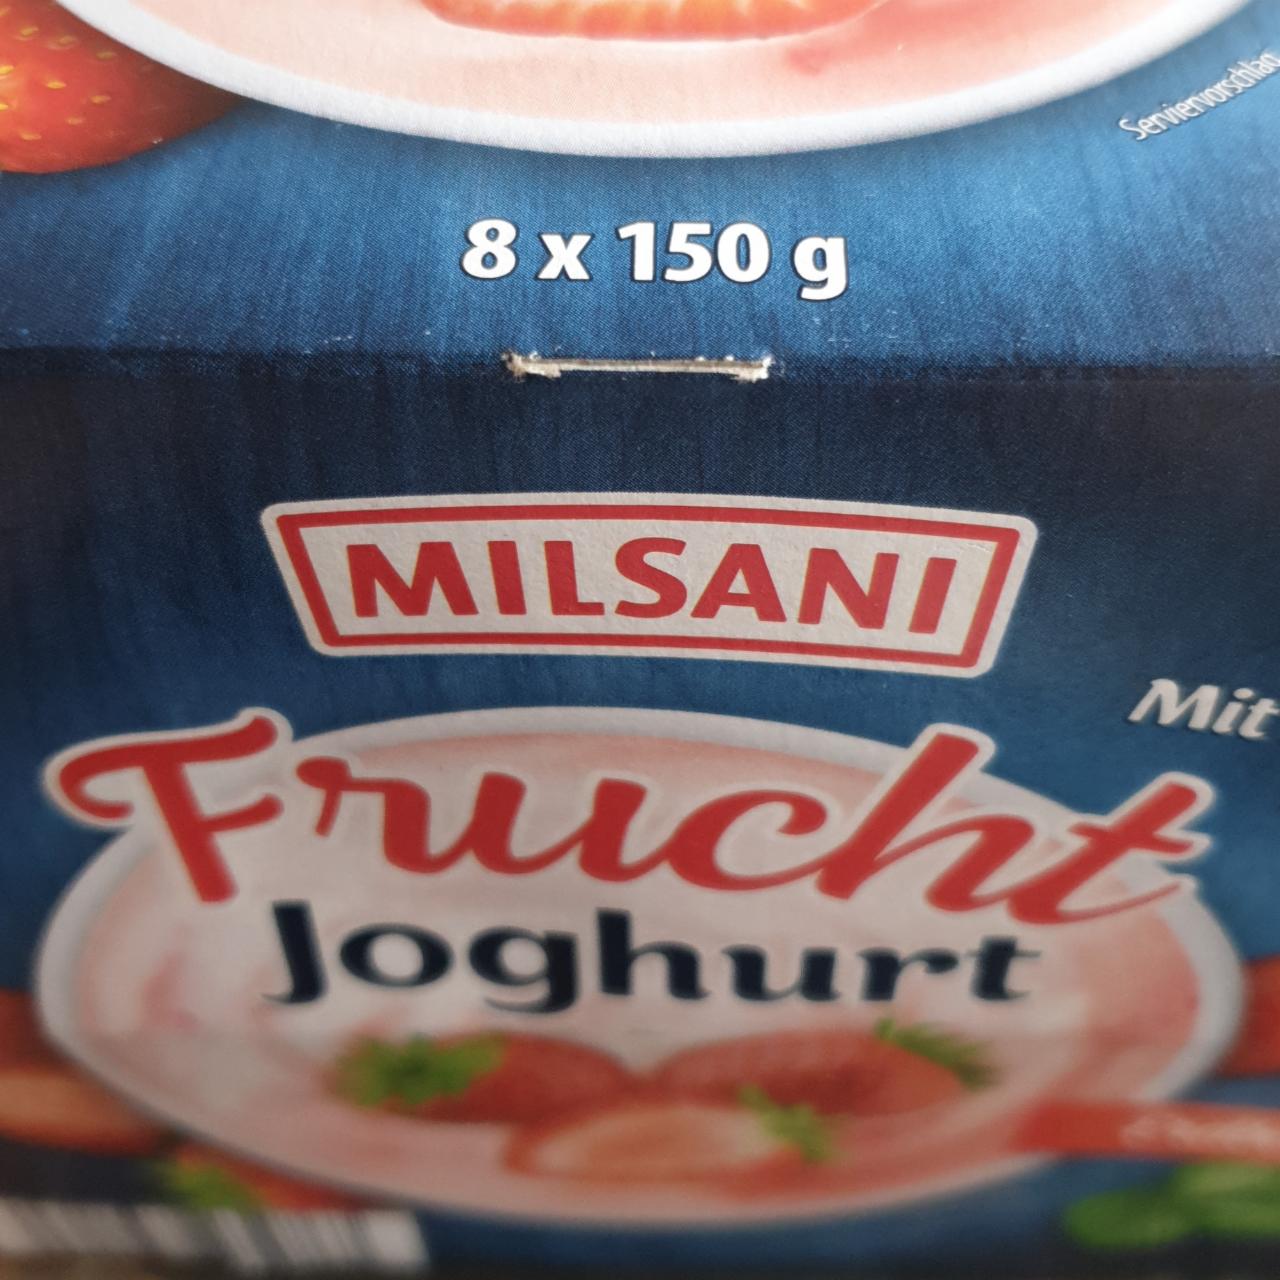 Fotografie - Frucht joghurt Erdbeere Milsani